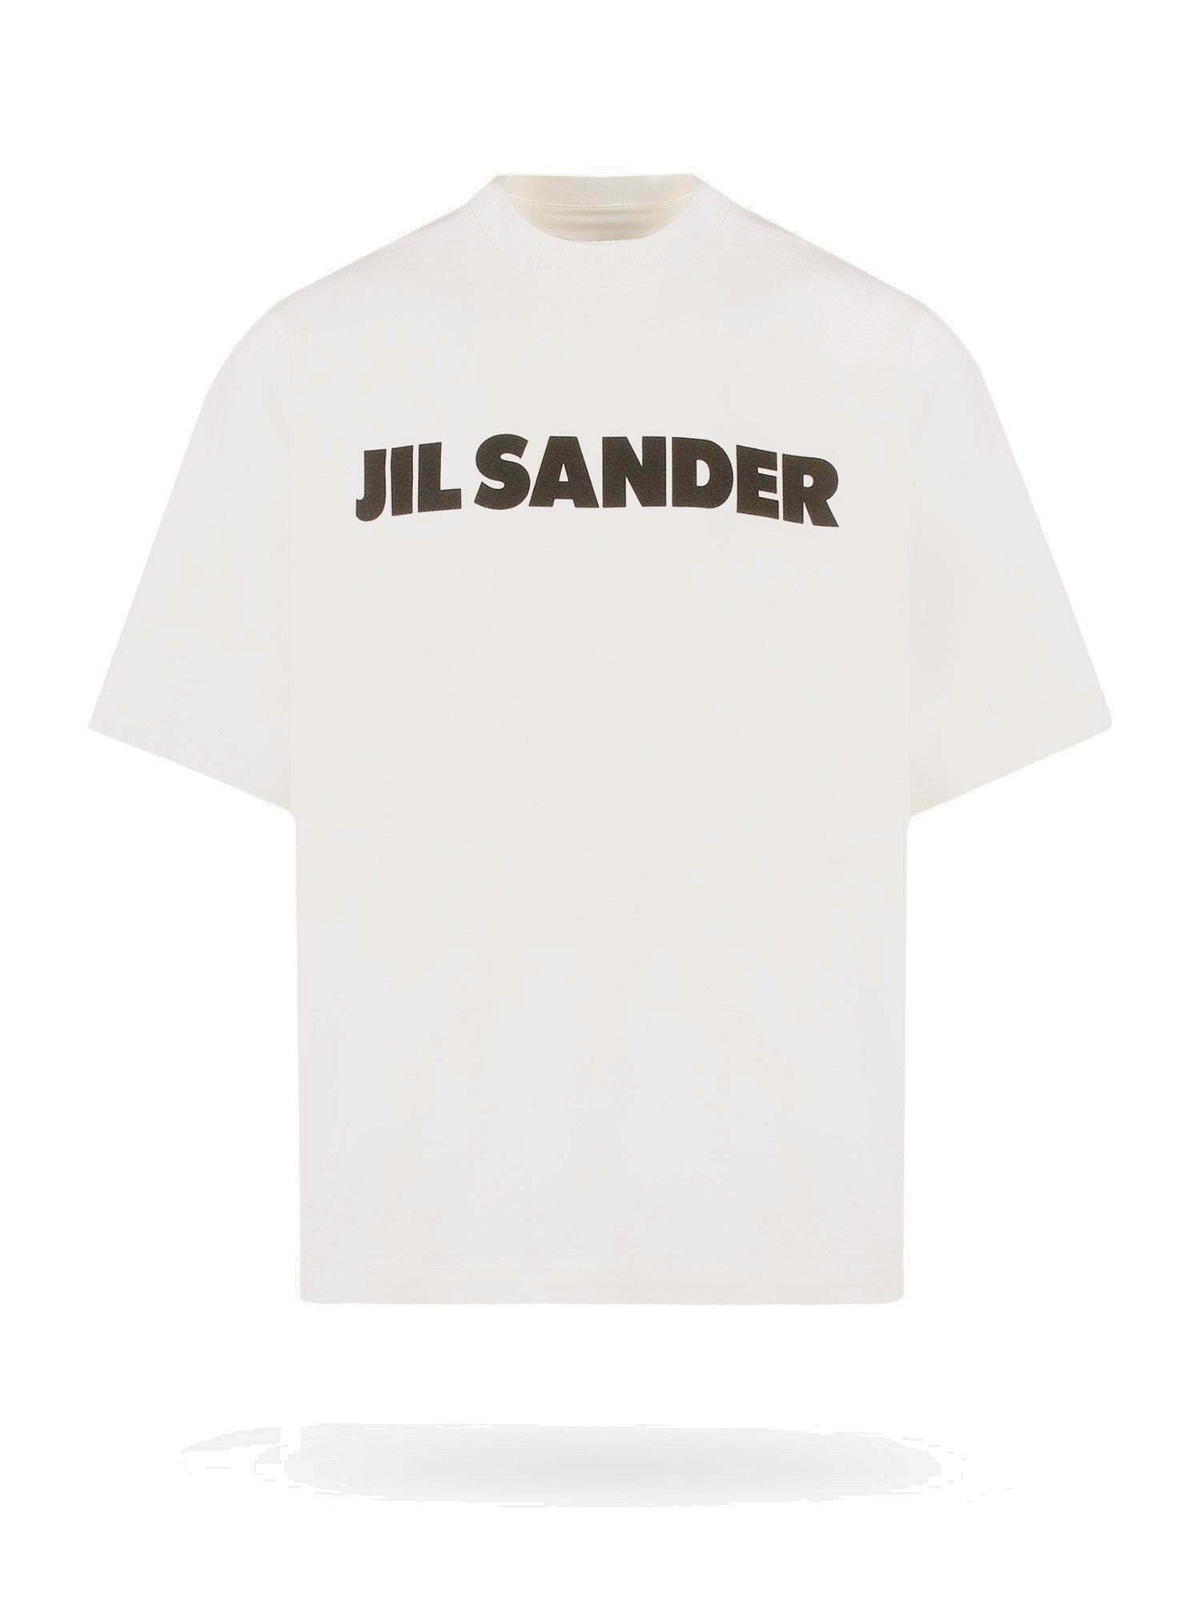 Photo: Jil Sander   T Shirt White   Mens